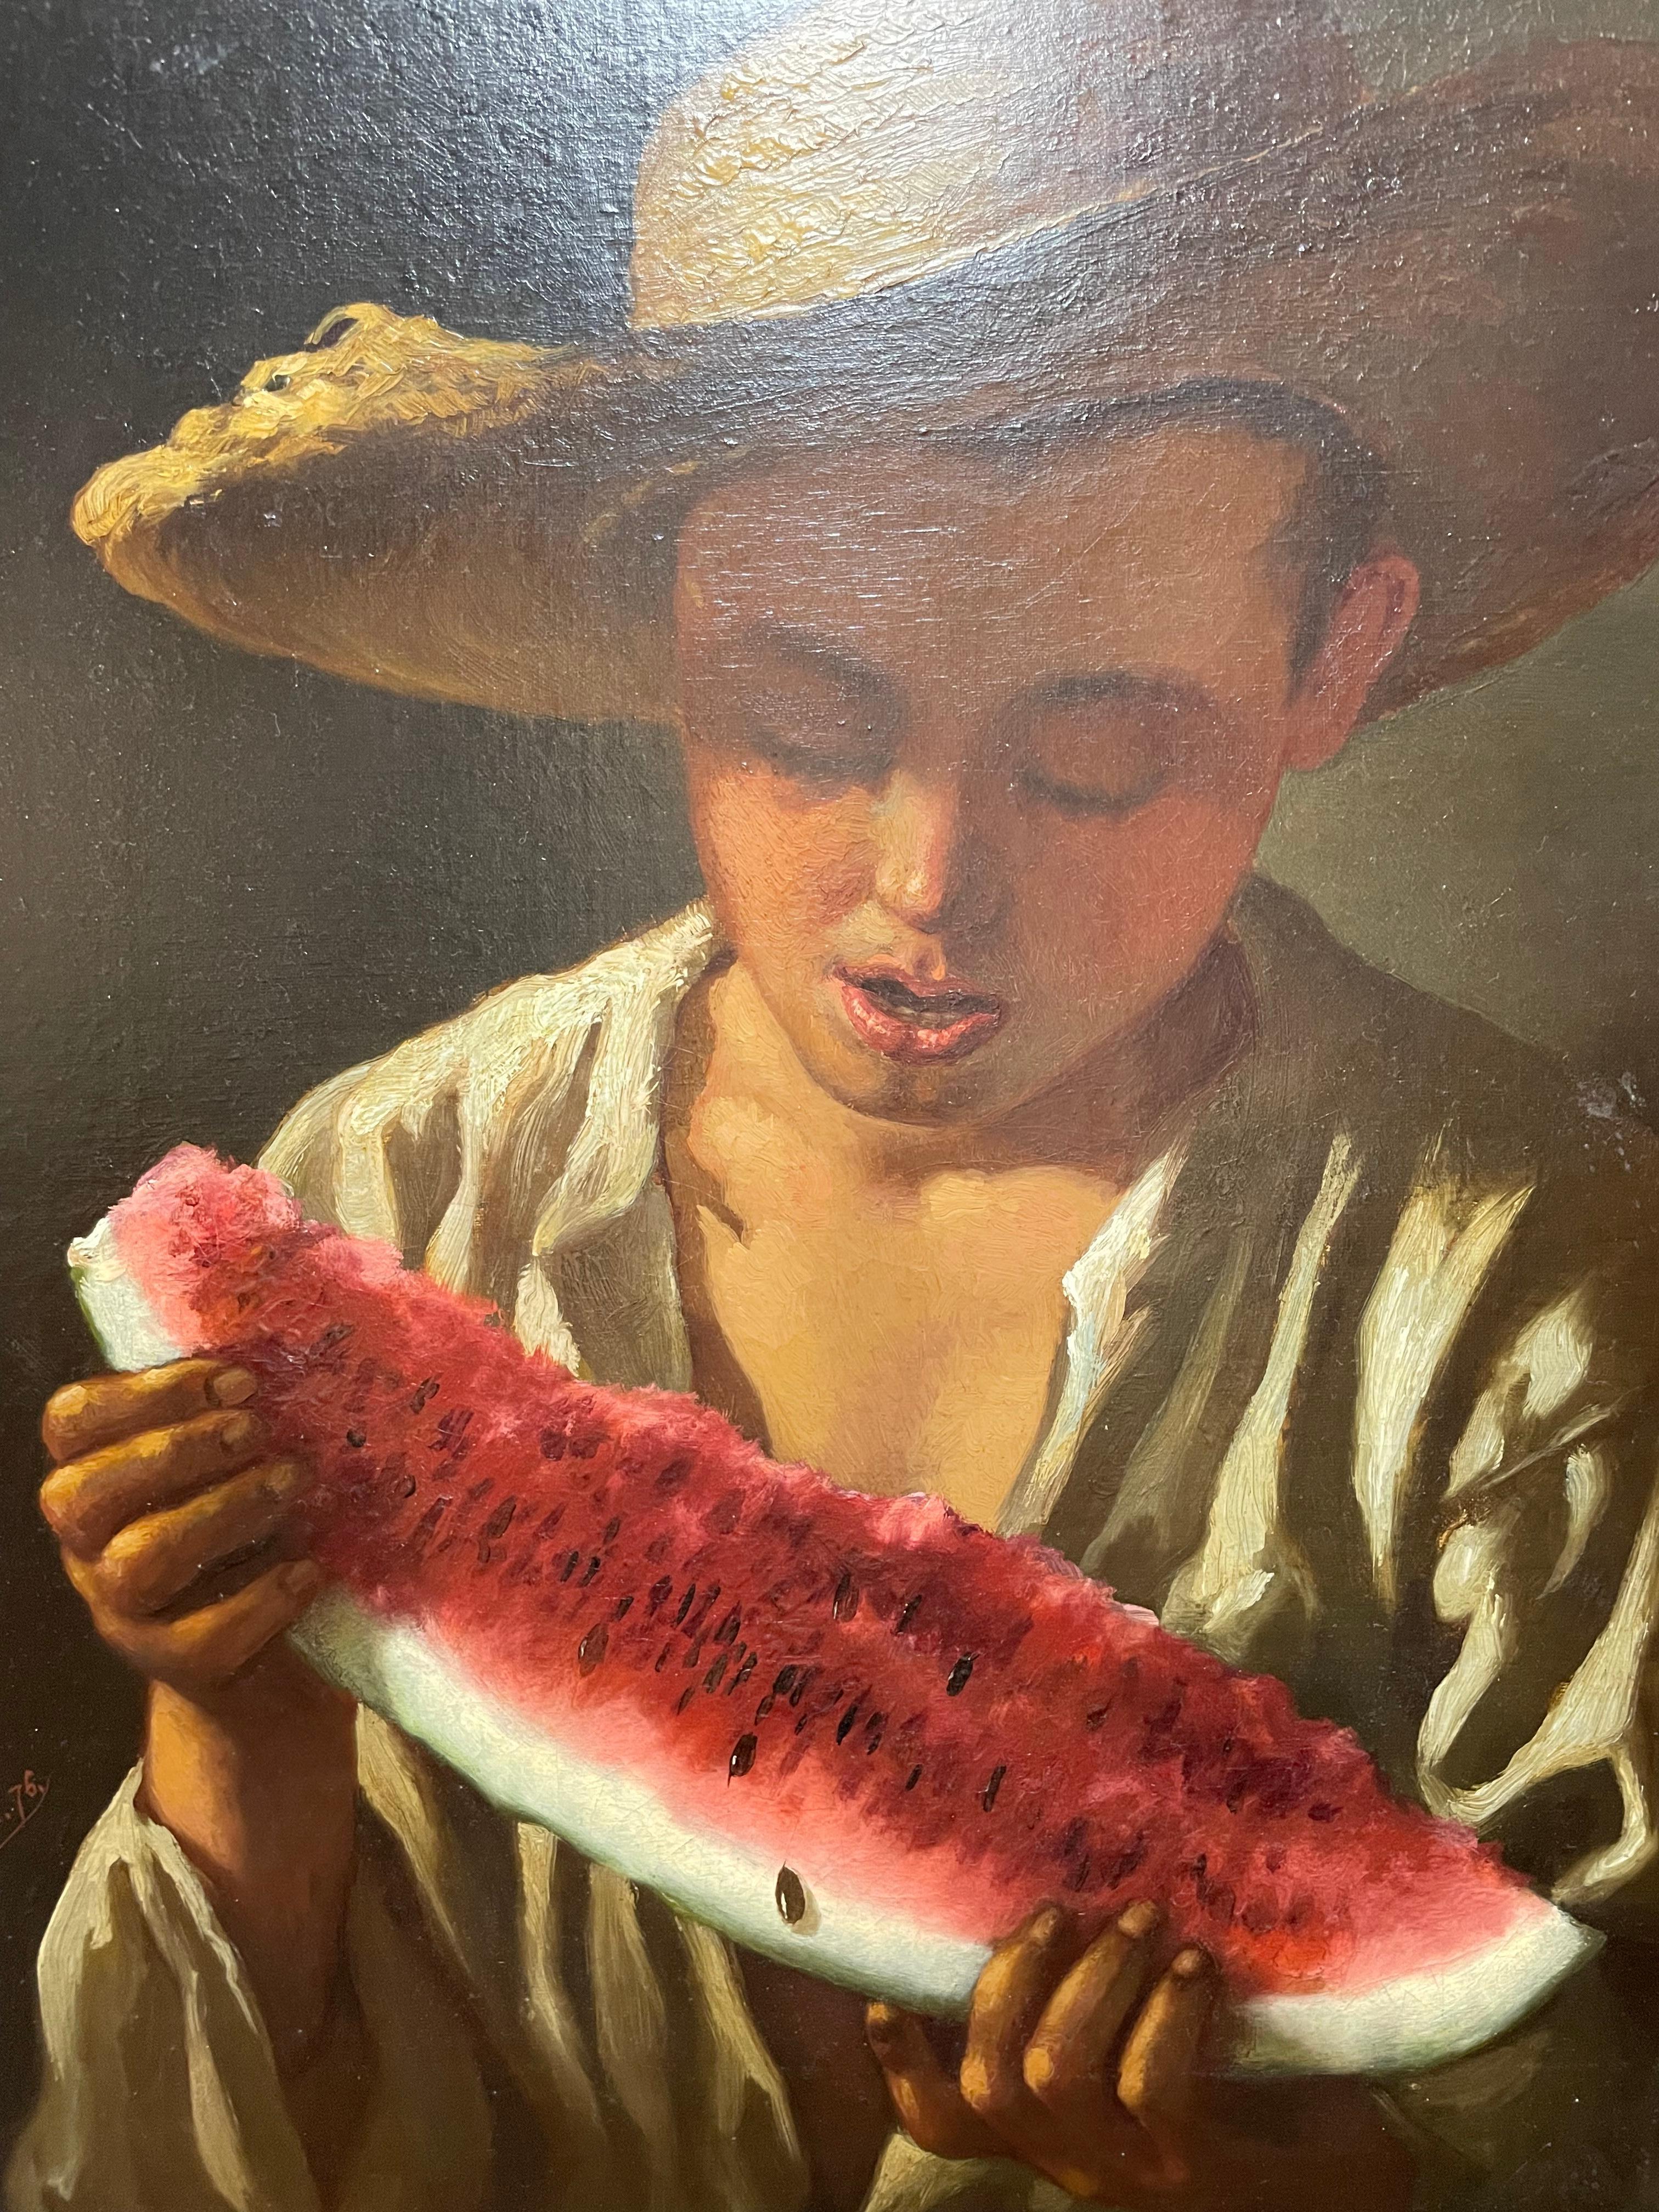 L'artiste américain William Fitz était un peintre du XIXe siècle qui vivait et travaillait à New York.

L'œuvre a été achevée en 1876, elle est meilleure qu'une J.G. Marron.

La peinture représente un garçon du Sud avec un chapeau de paille, prenant